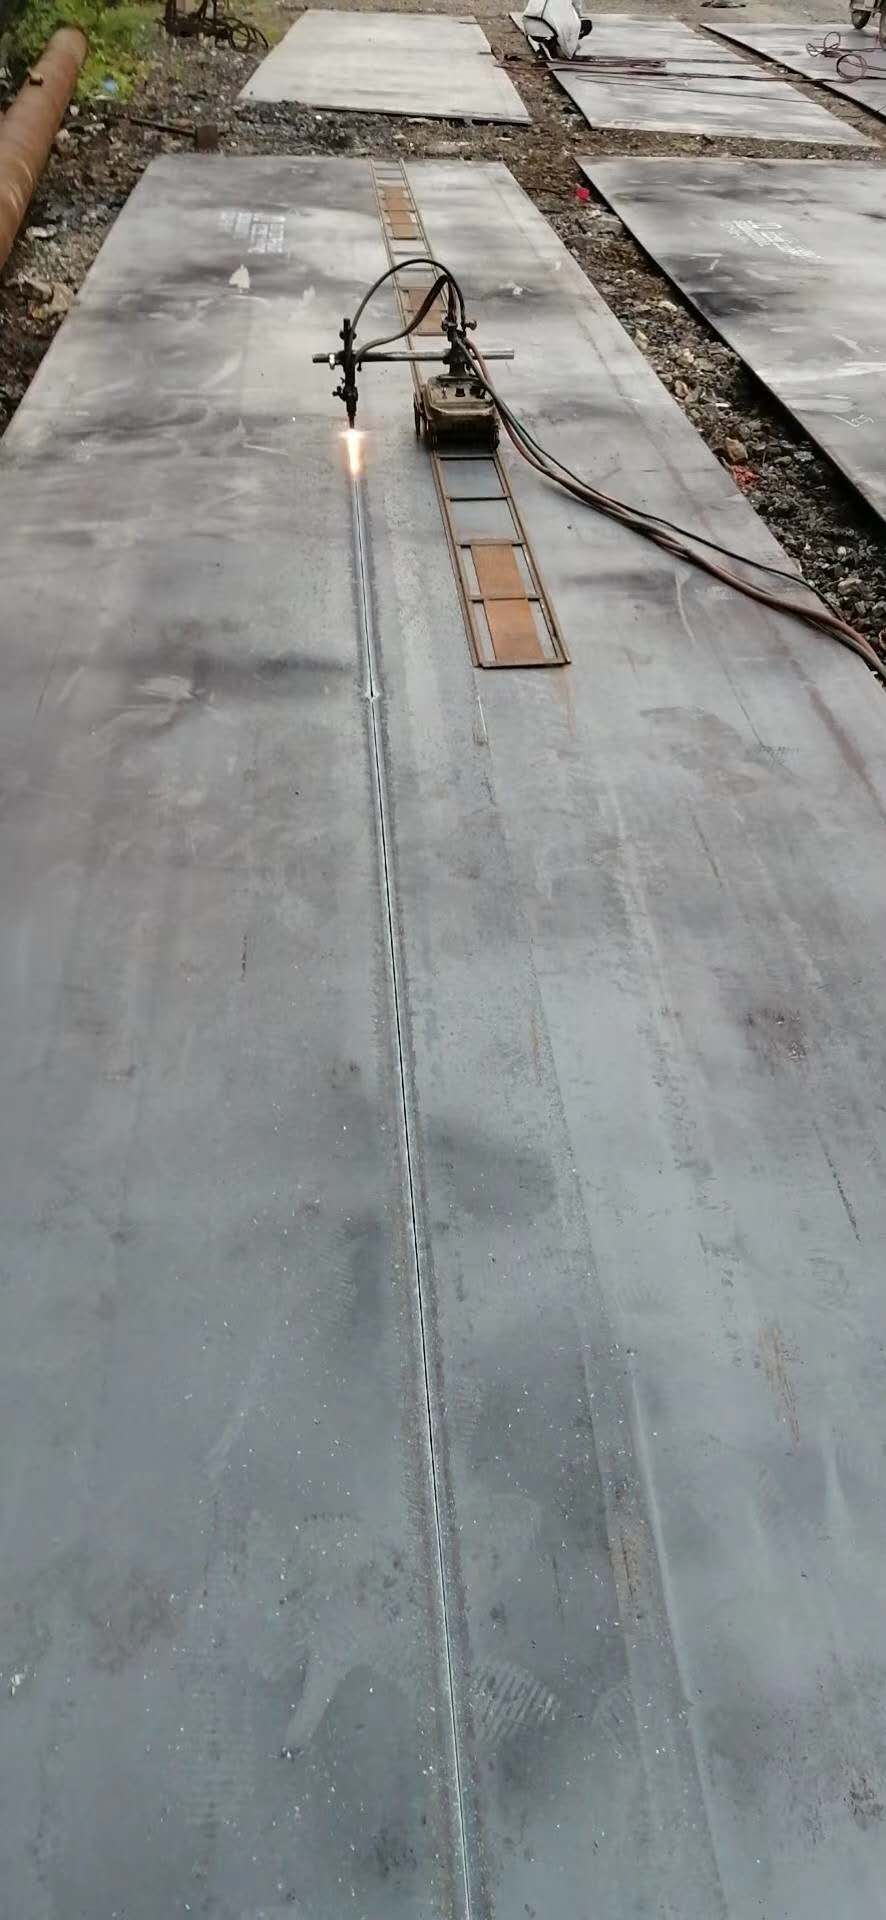 Placa de acero laminado en caliente para construcción naval de grado ABS